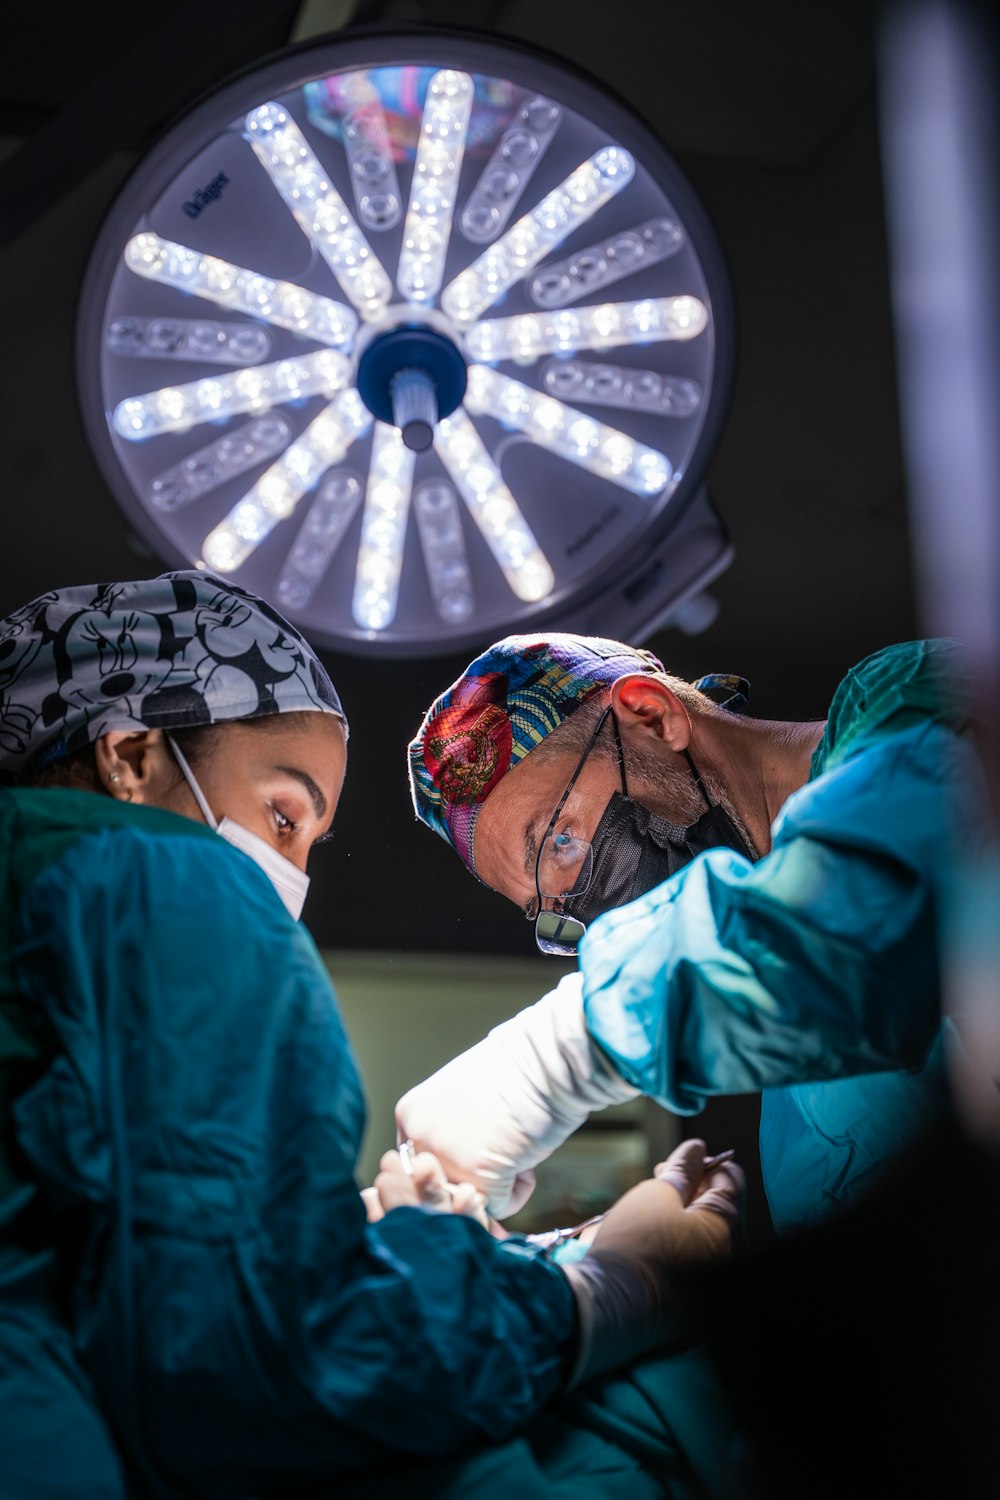 deux chirurgiens pratiquant une intervention chirurgicale sur un patient dans un hôpital